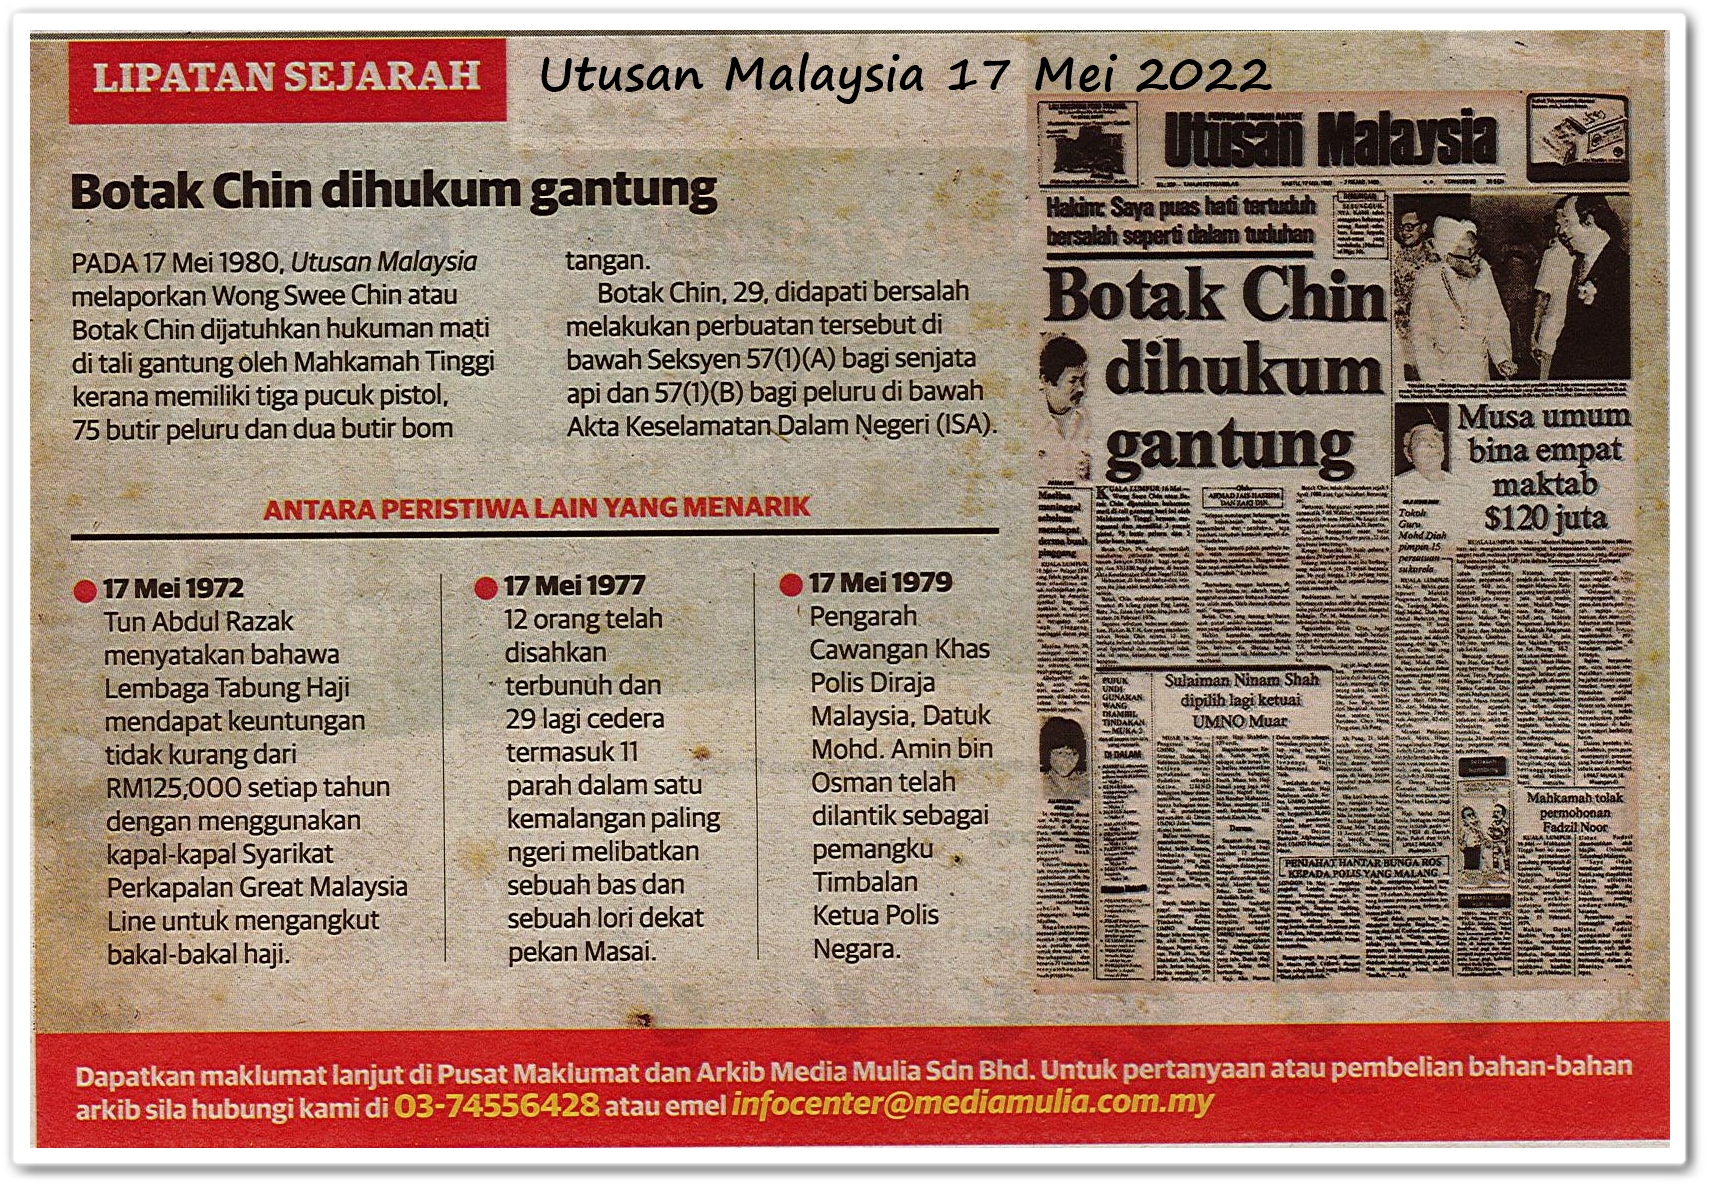 Lipatan sejarah 17 Mei - Keratan akhbar Utusan Malaysia 17 Mei 2022